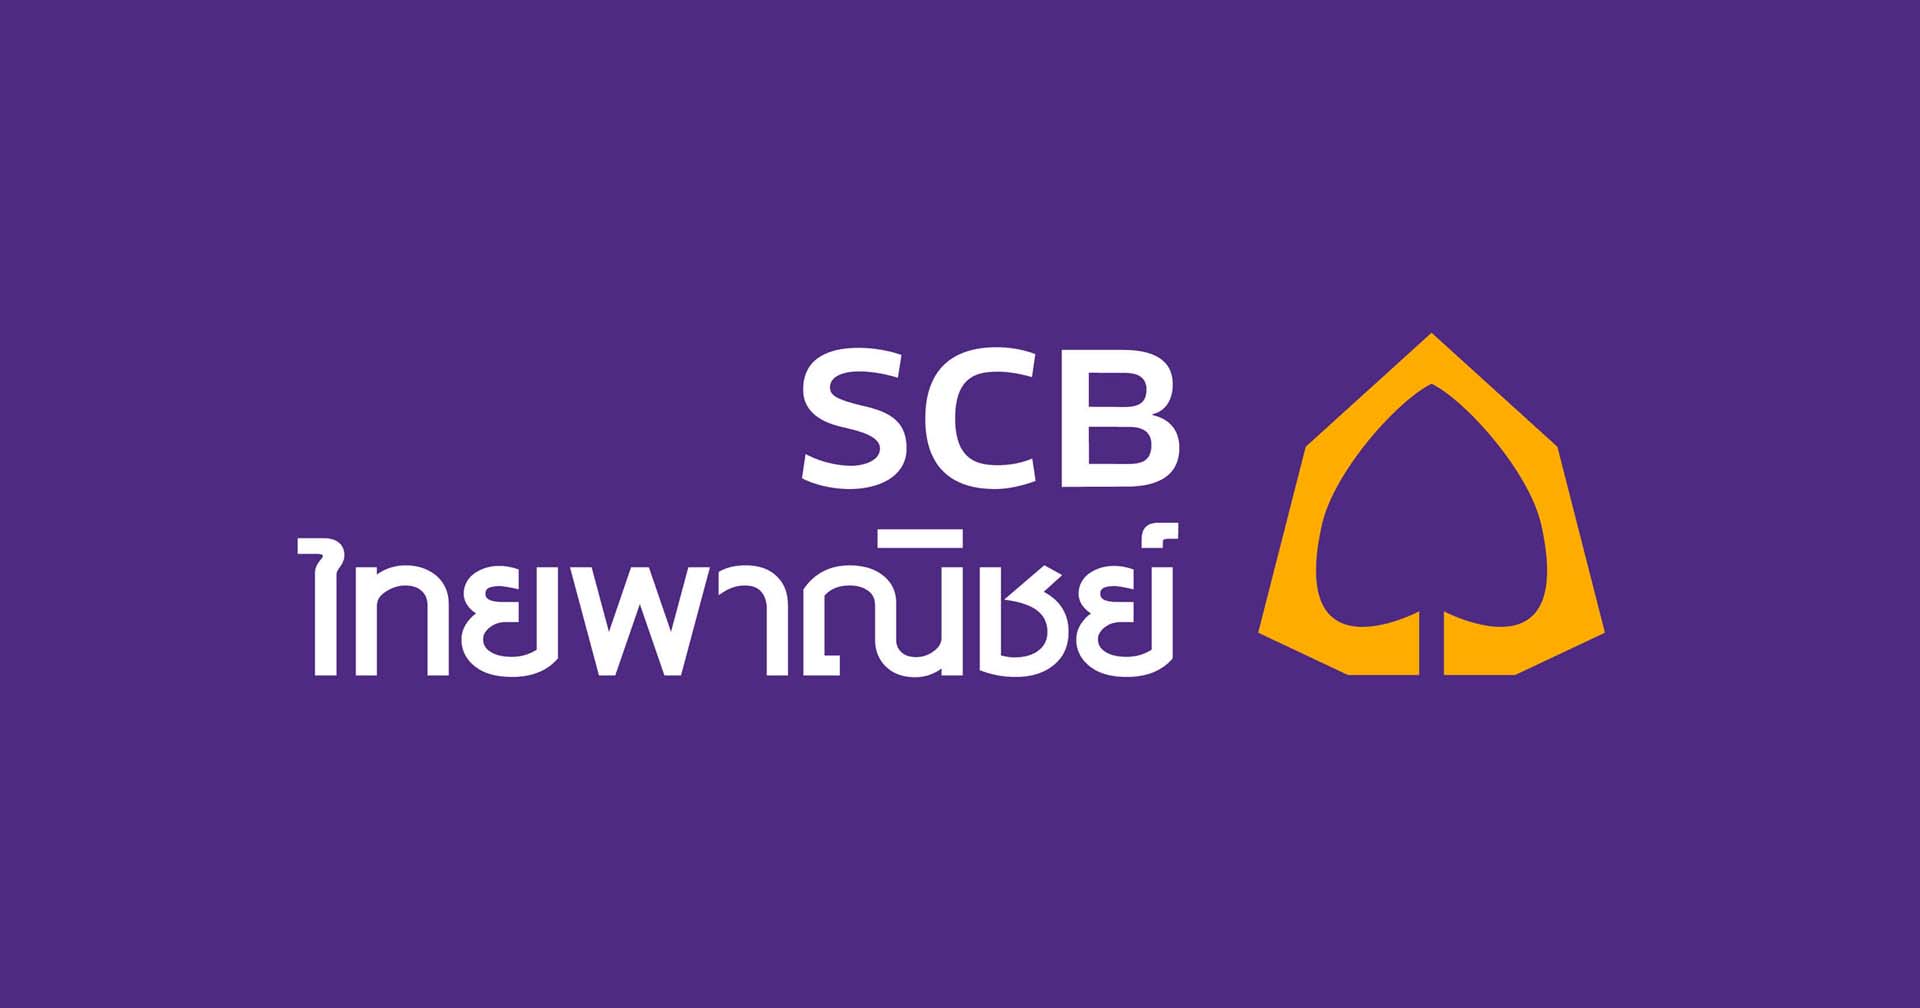 ธนาคารไทยพาณิชย์ (SCB : Siam Commercial Bank)